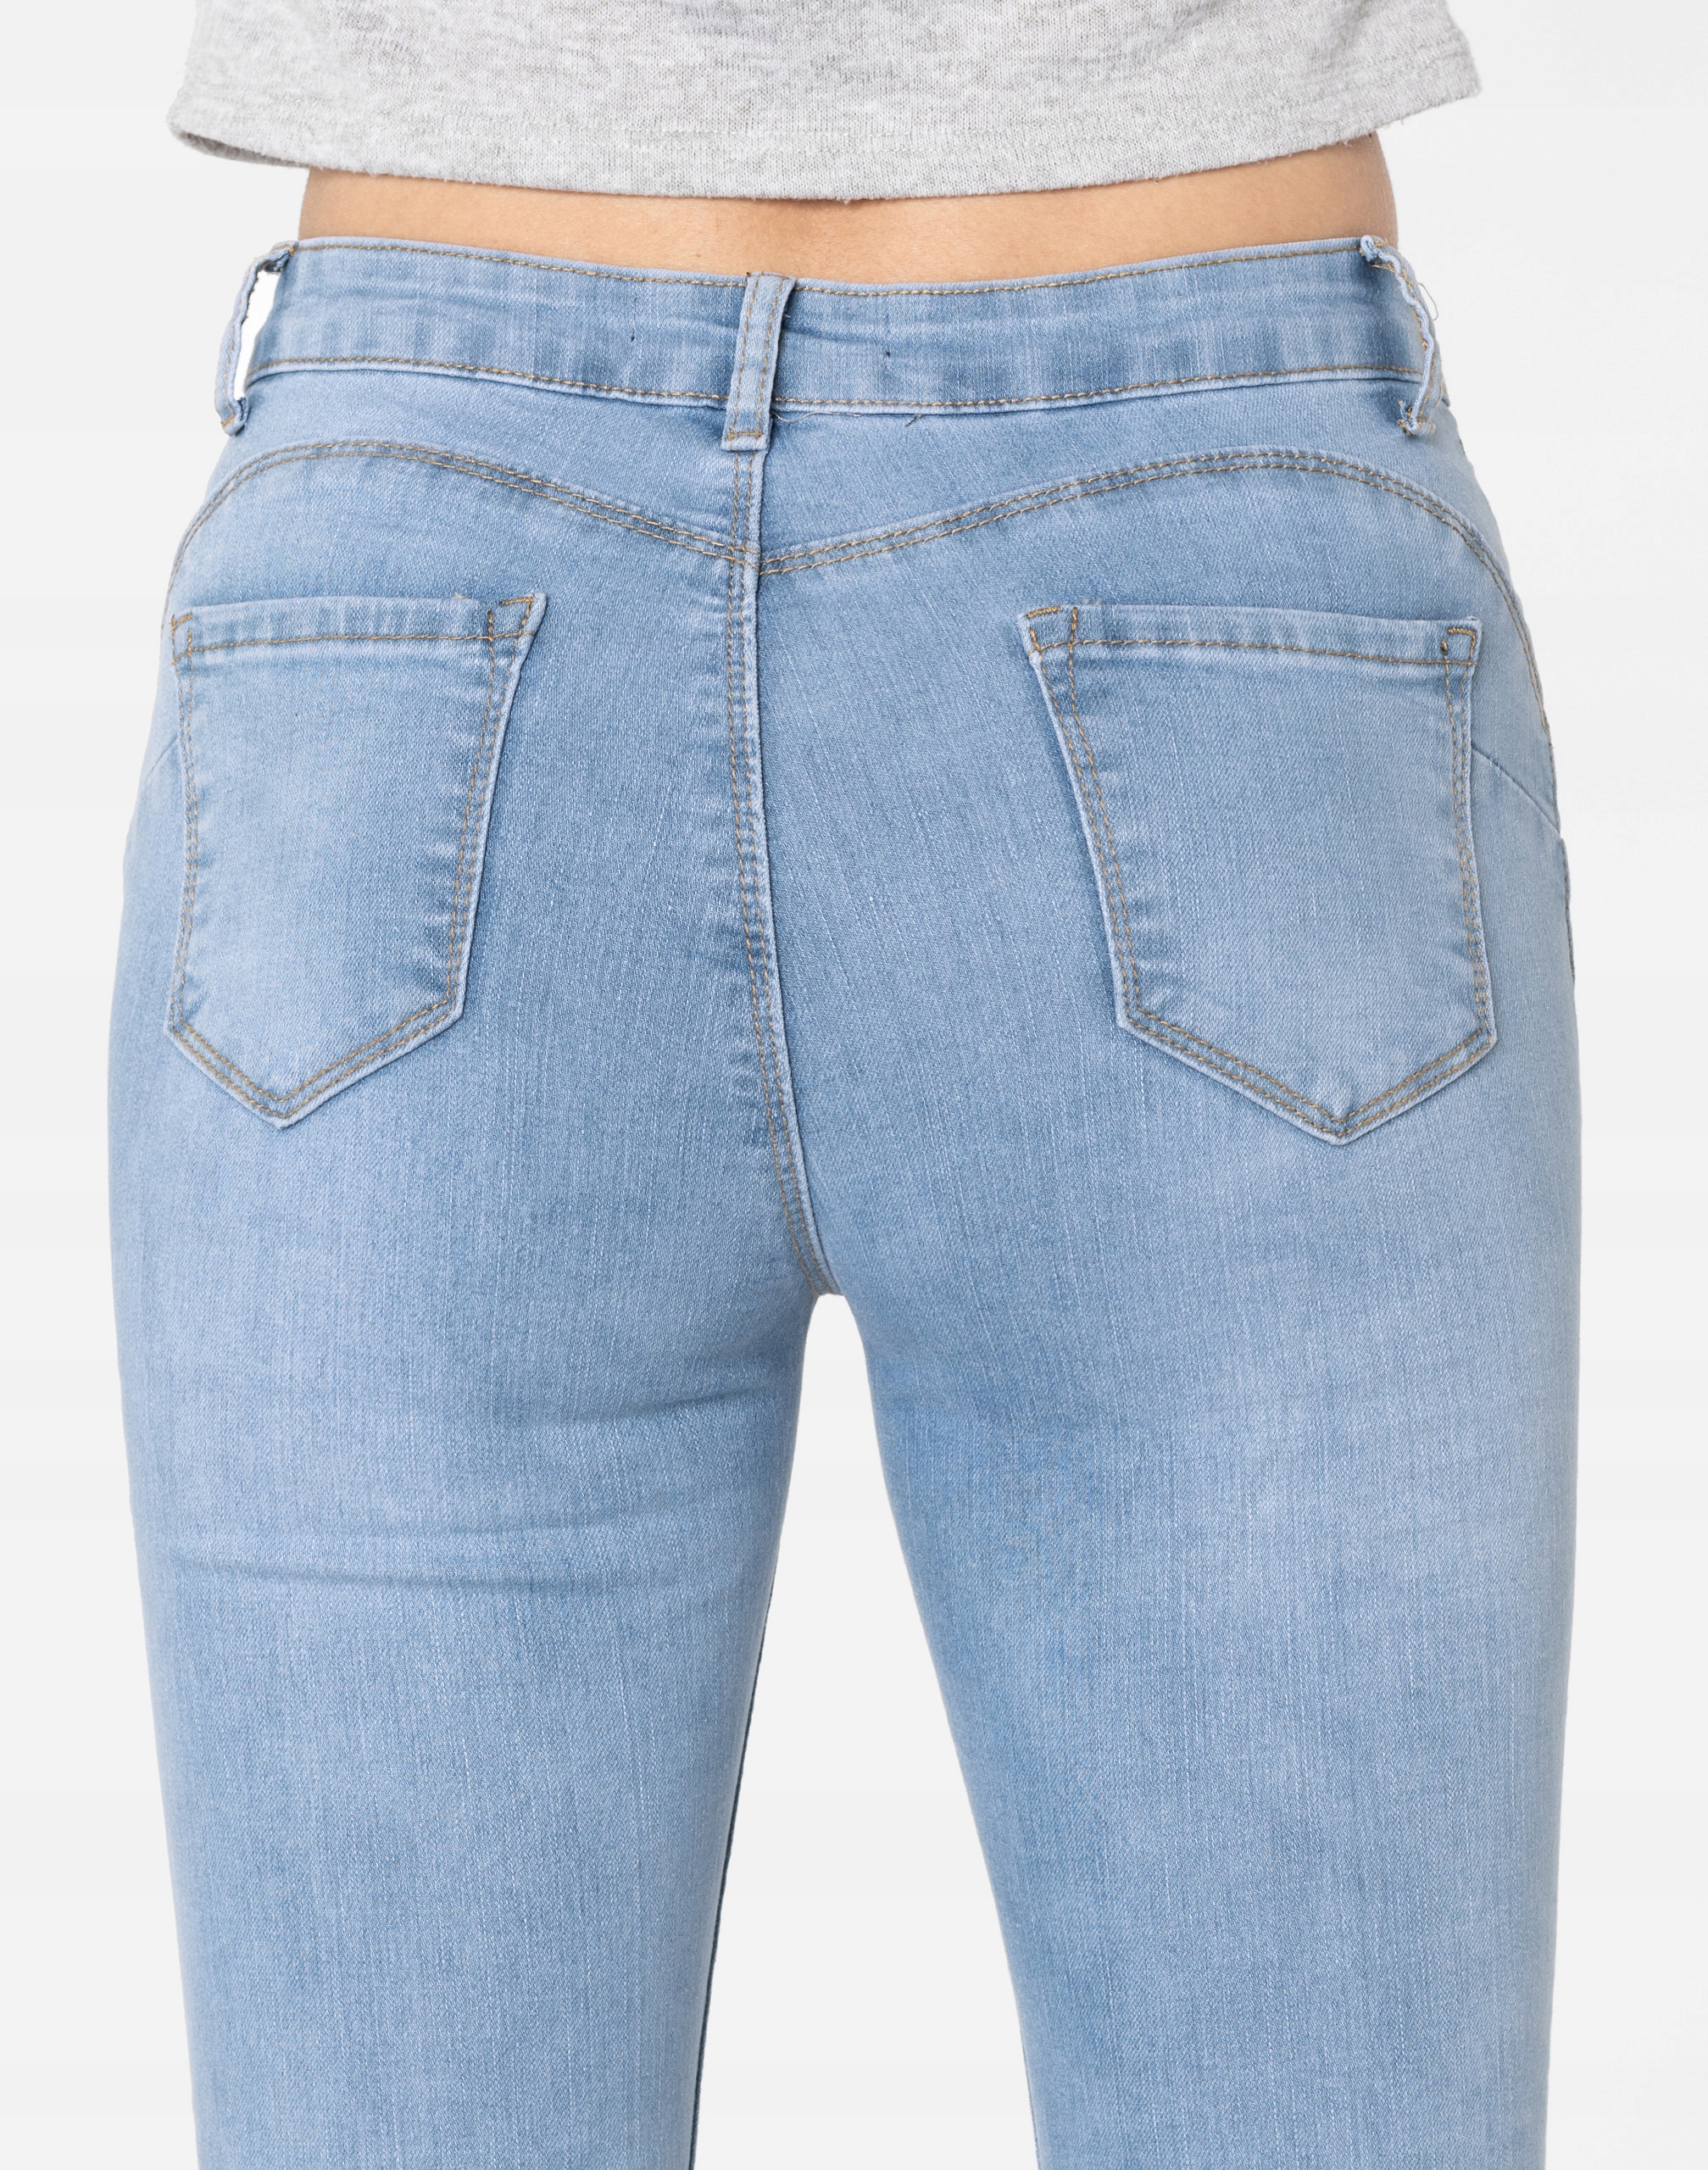 Брюки джинсы пуш-ап женские 3711 r 74 cm Midsection (Waist Height) high